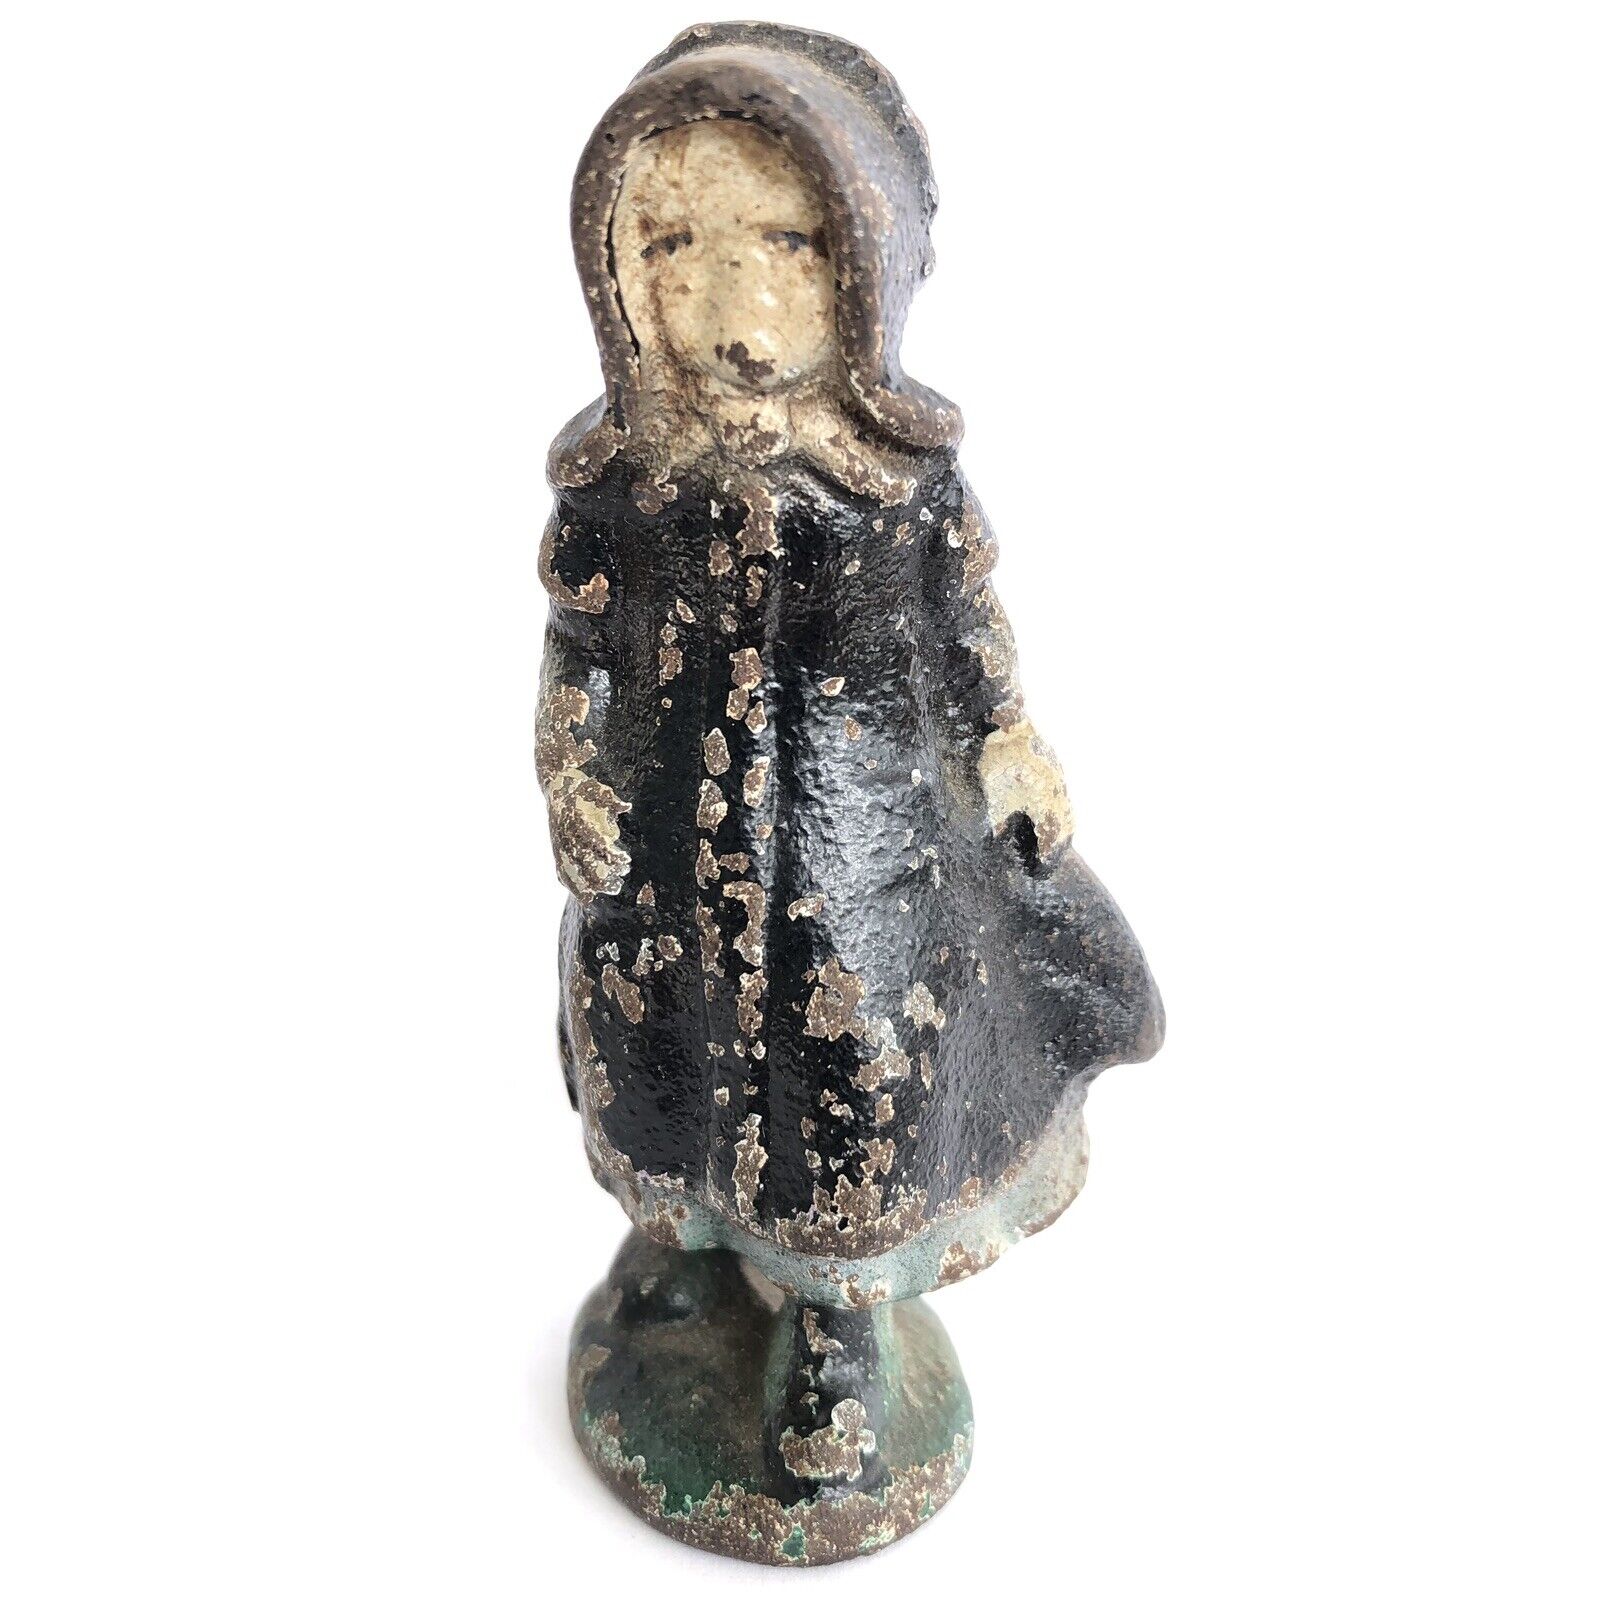 Vintage Cast Iron Figure, Amish Girl, Figurines, Toys